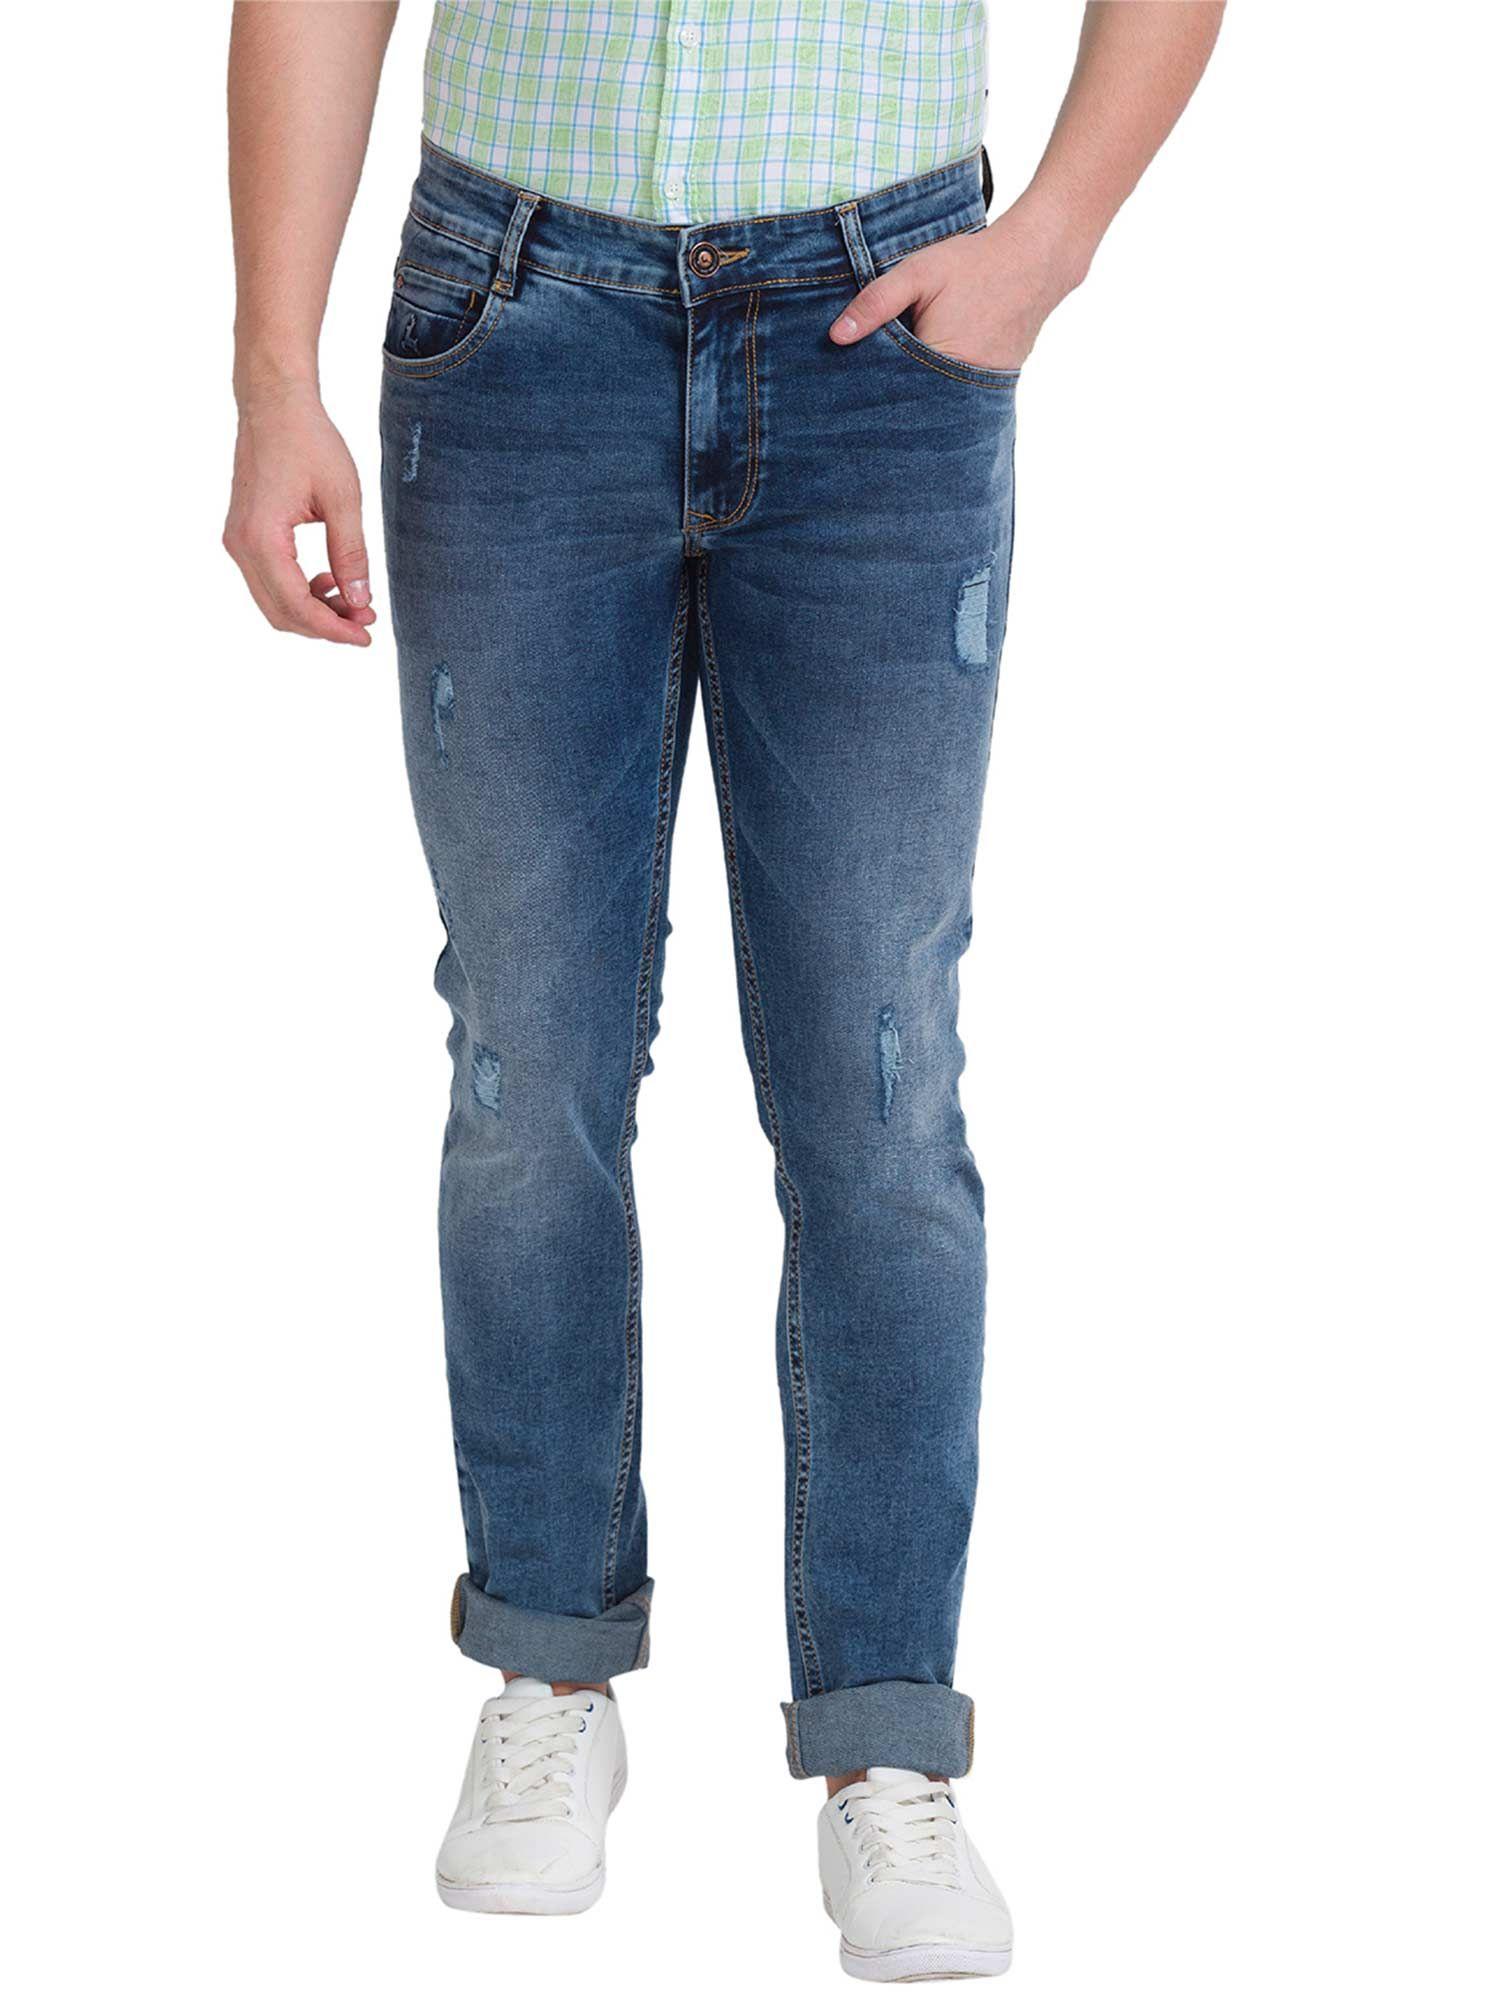 men patterned blue jeans